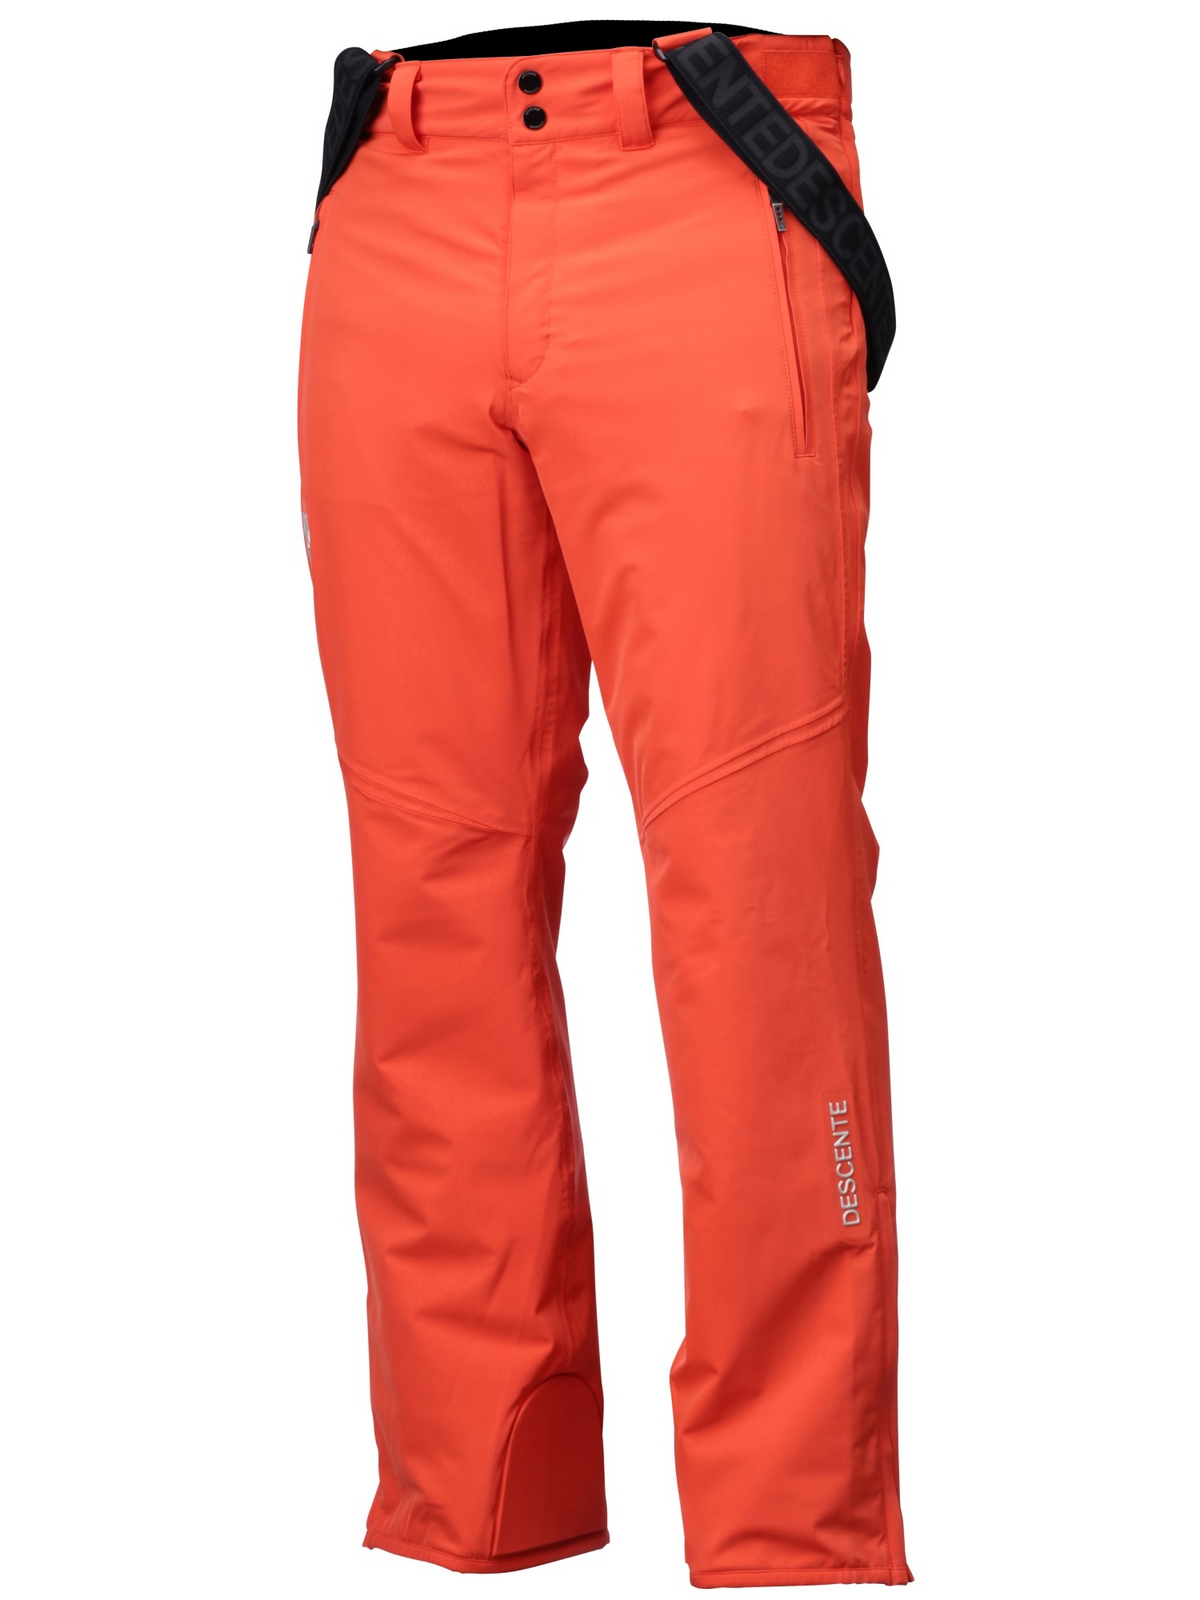 Ski Pants; SOS, Sportswear of Sweden; VMBM 001056